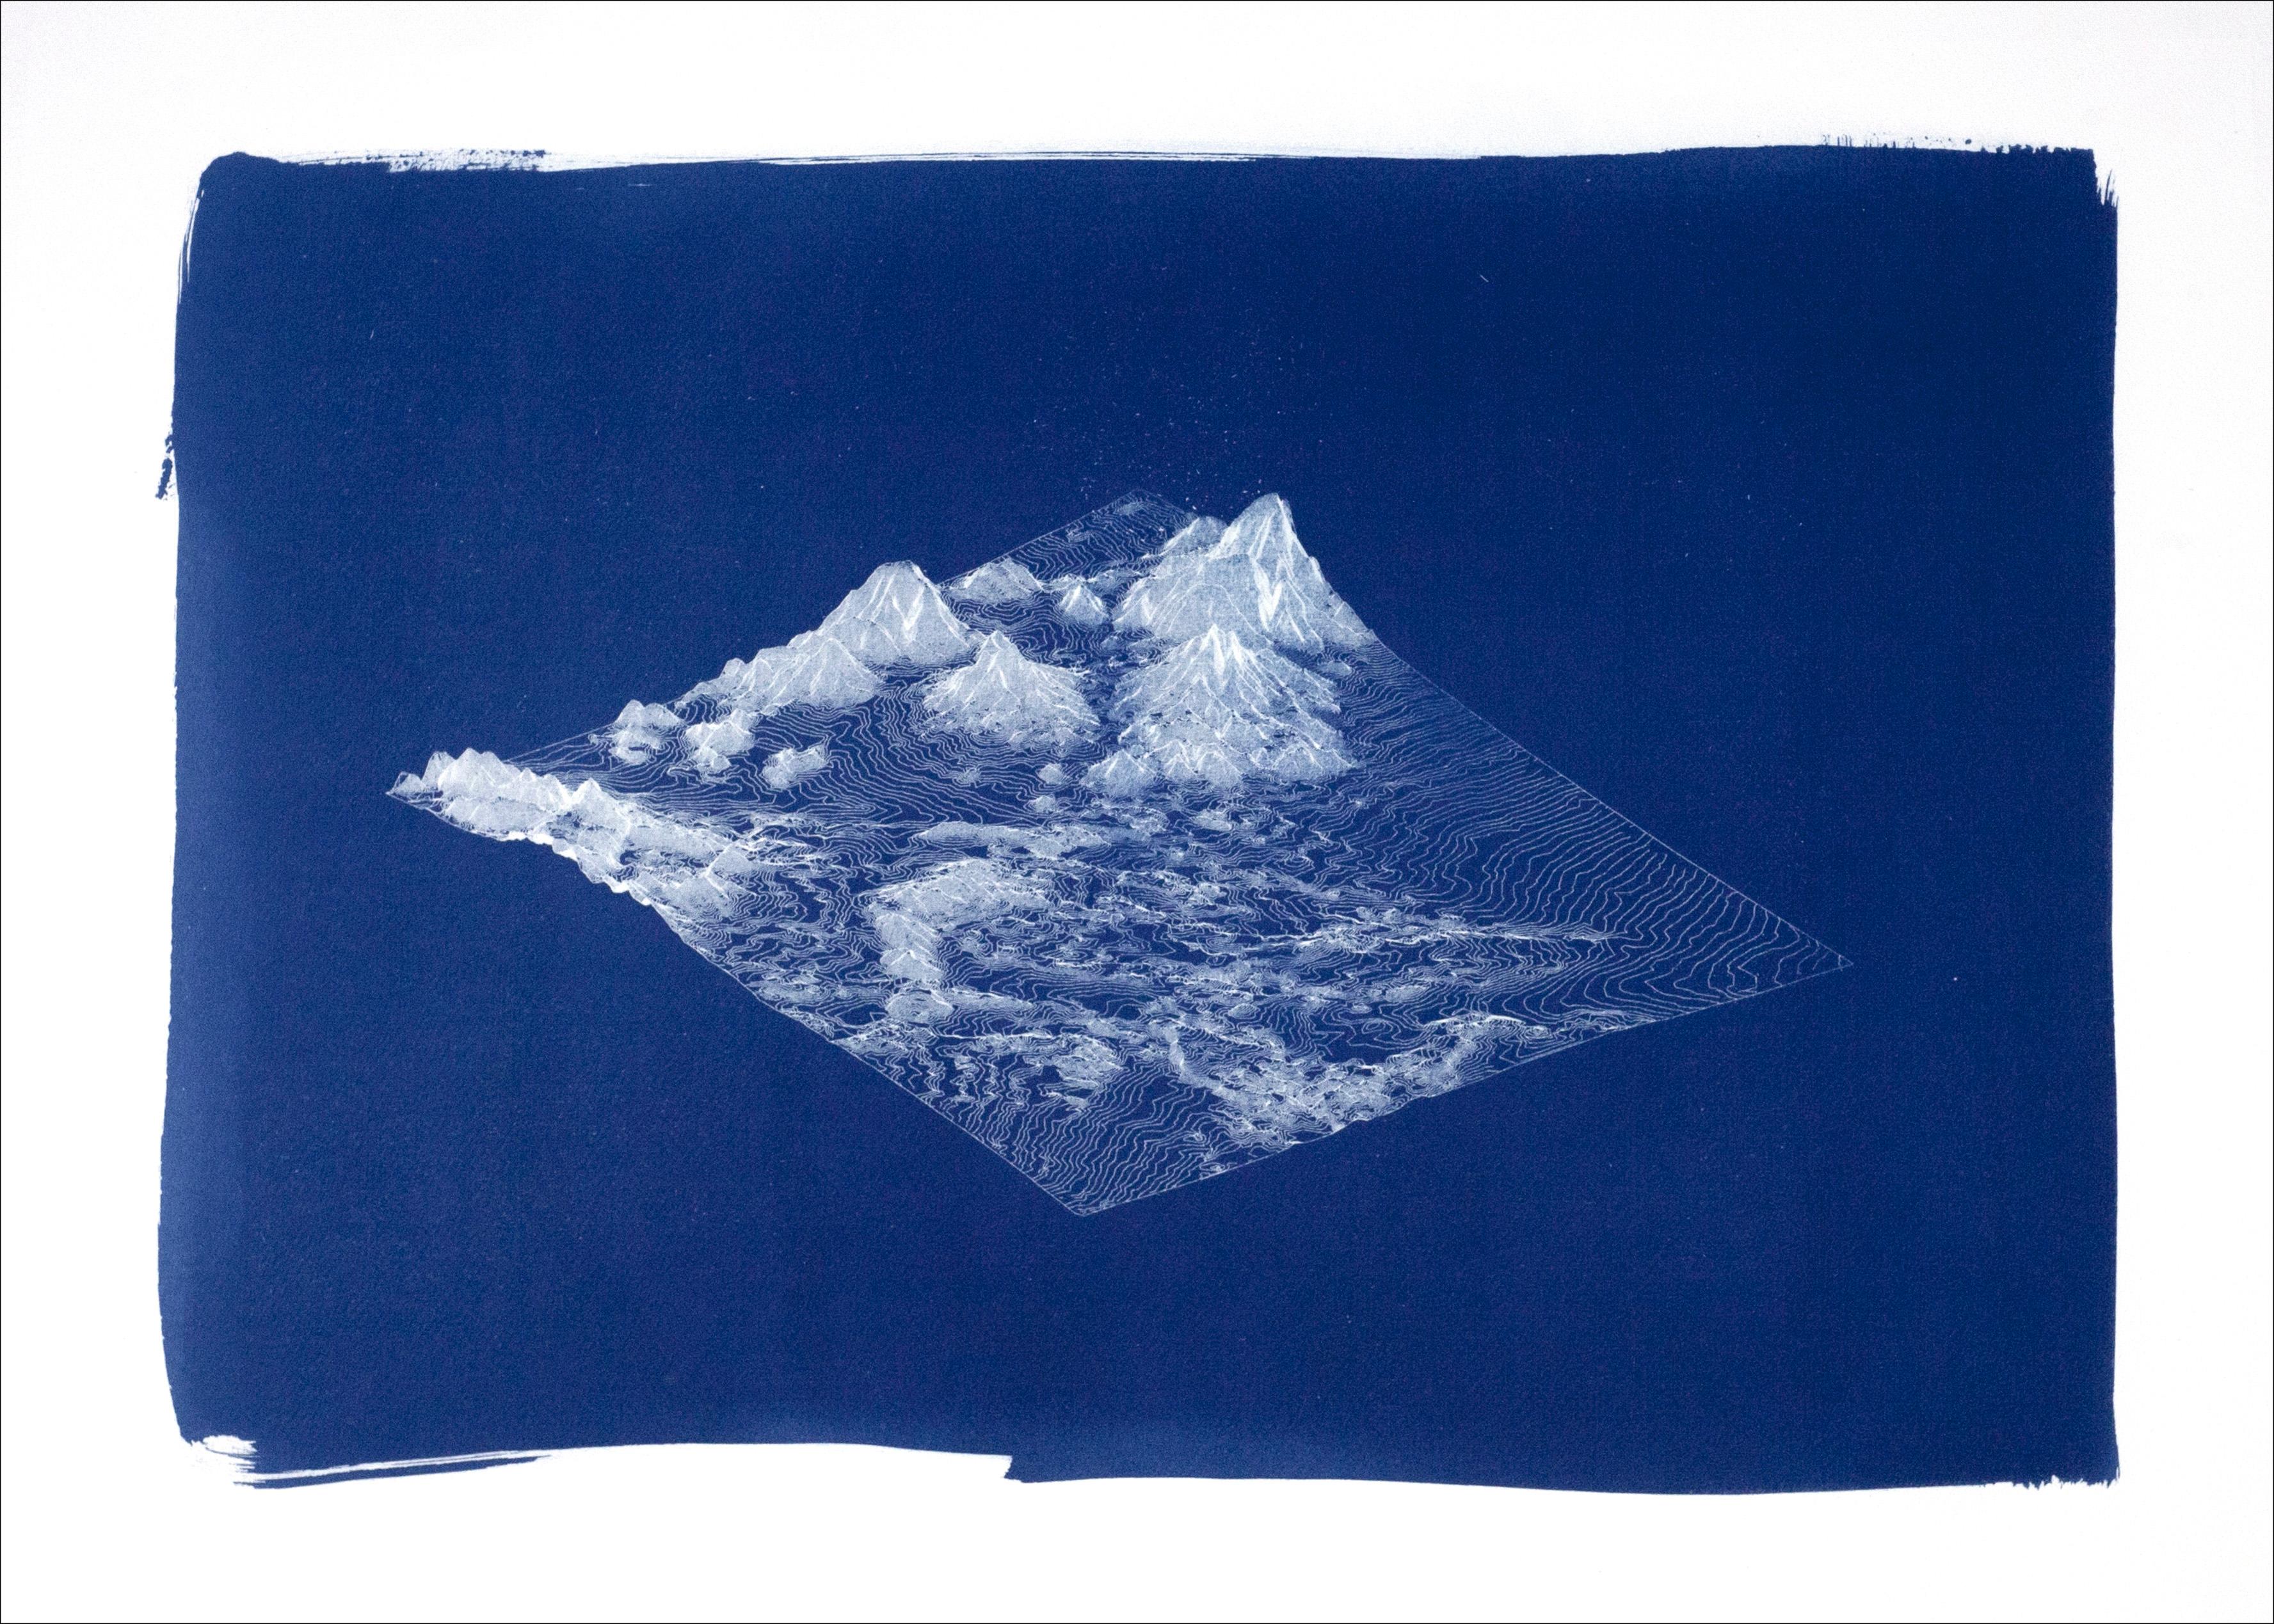 Kind of Cyan Landscape Print - 3D Render Mountain Landscape, Handmade Cyanotype in Deep Blue Tones, Minimal 